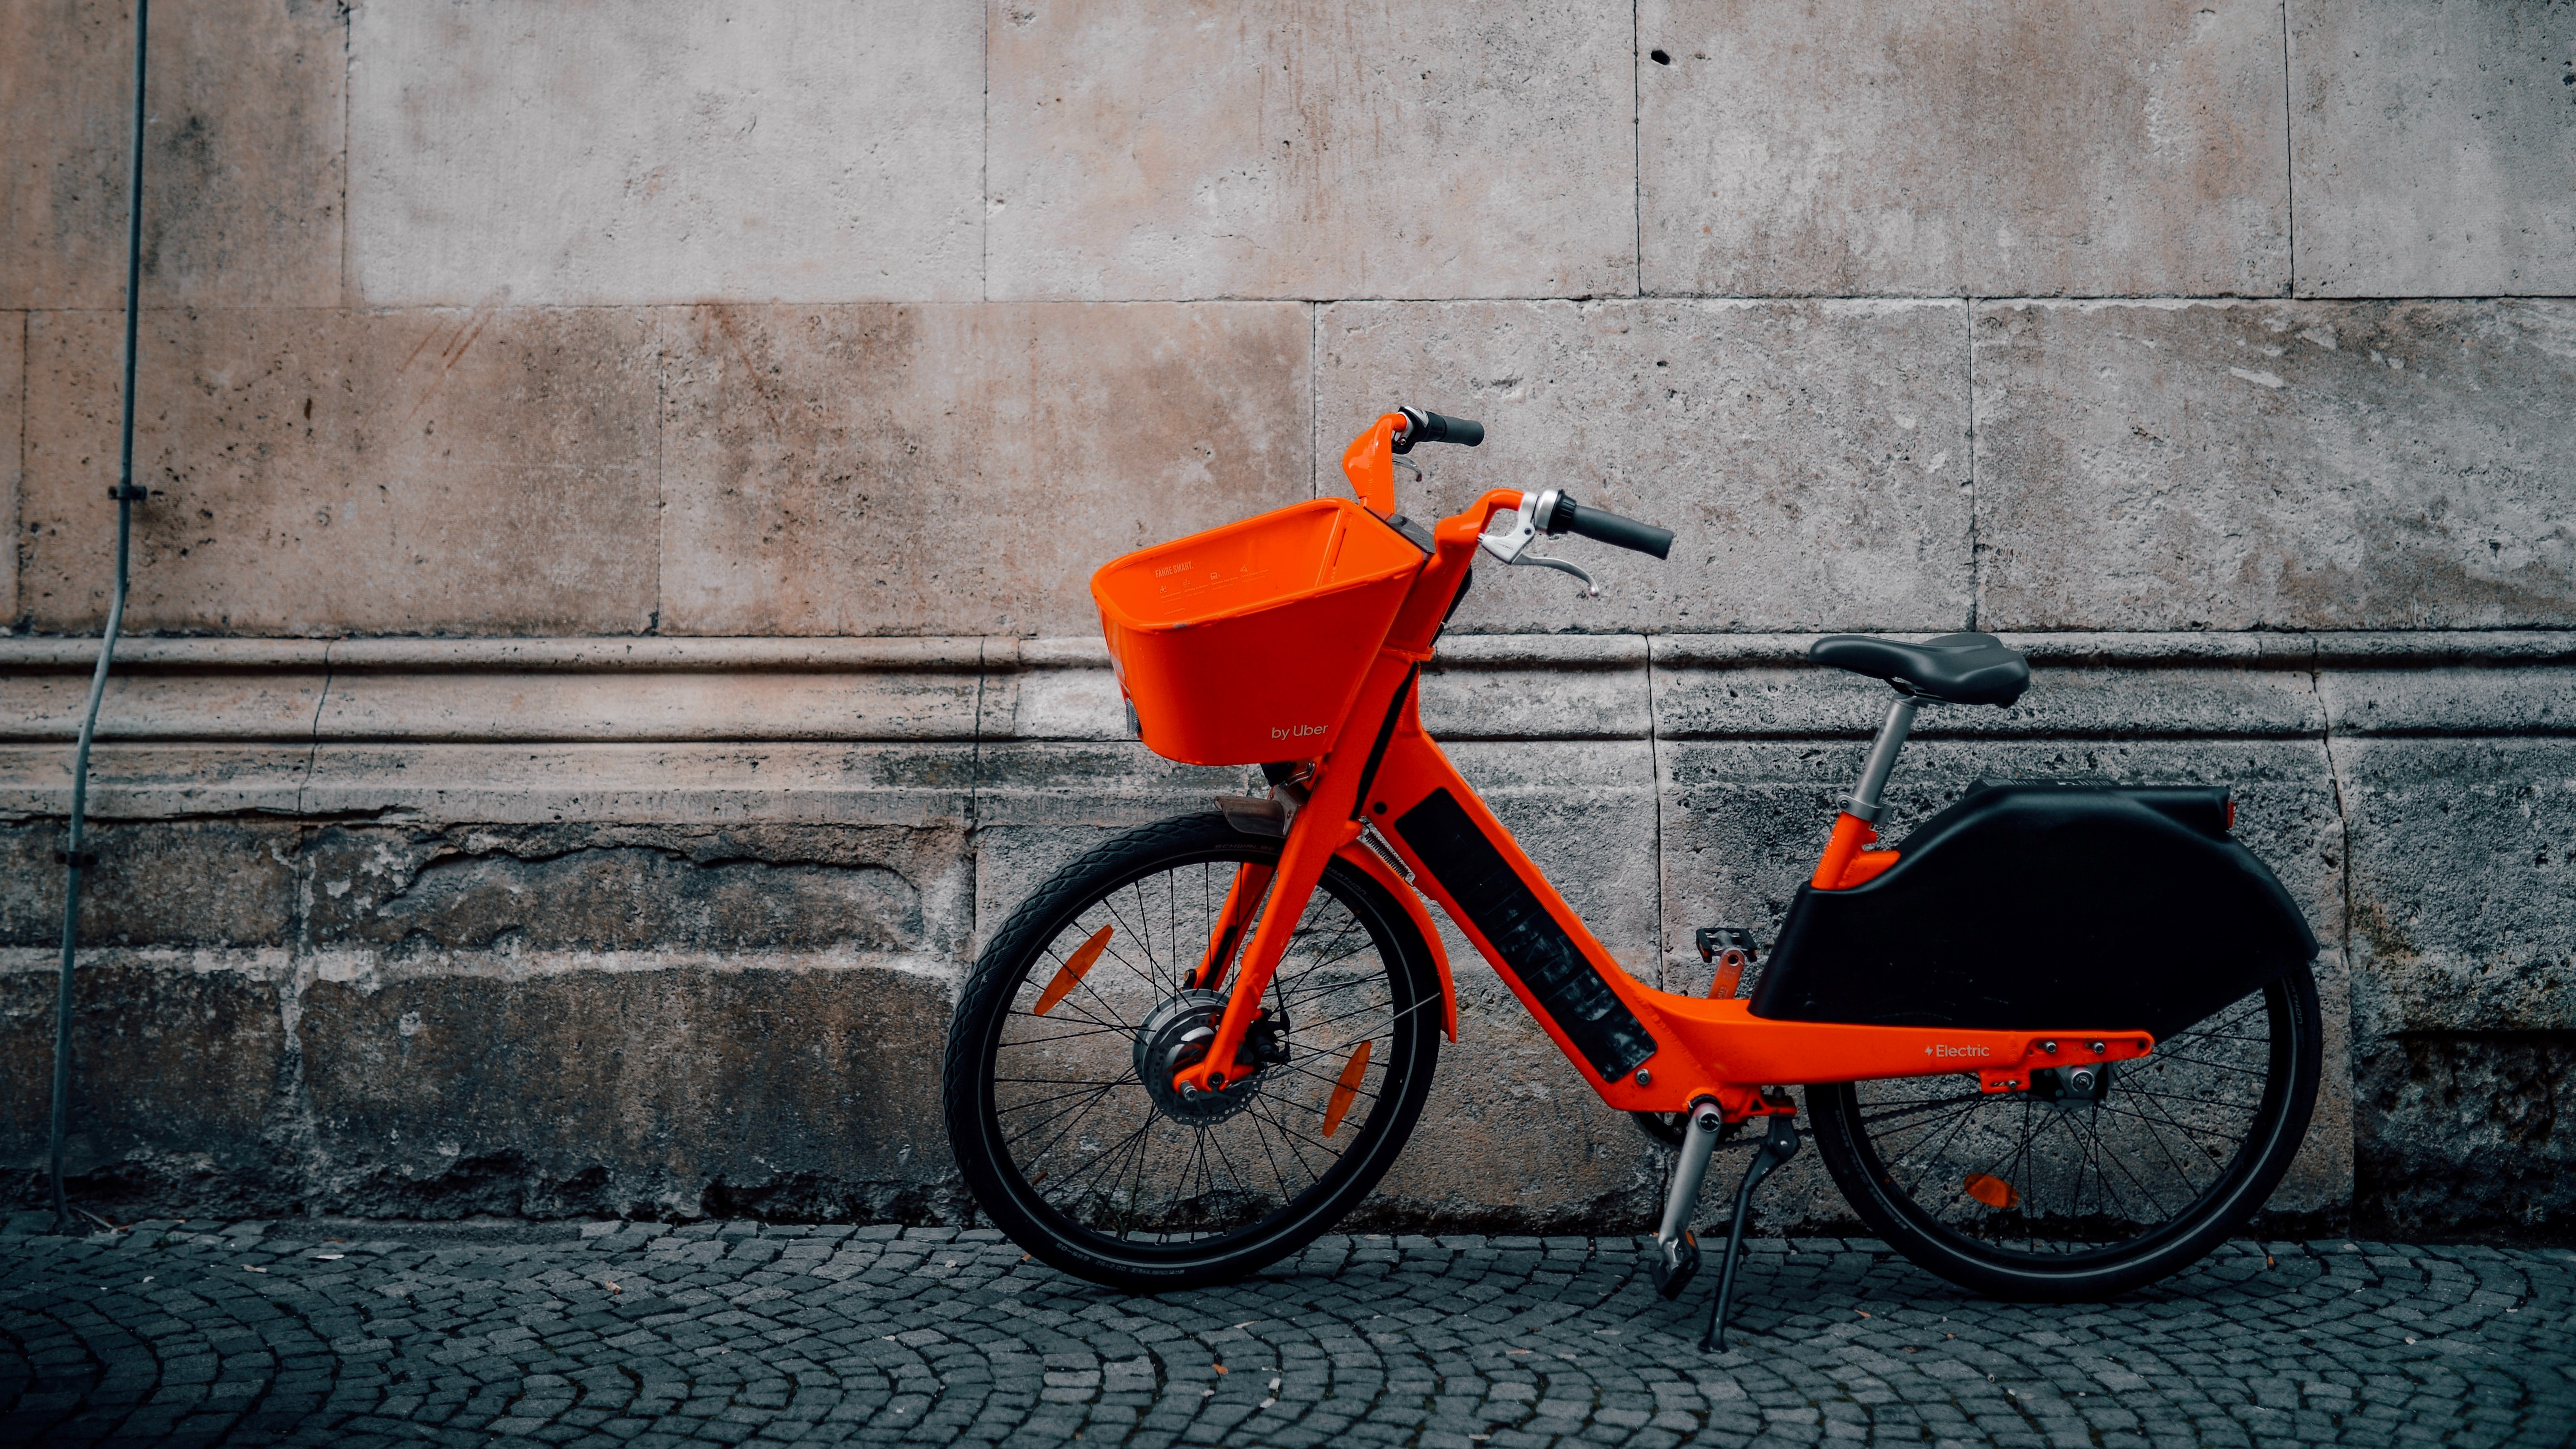 Bicicletas e trotinetas partilhadas: mobilidade amiga do ambiente. FOTO UNSPLASH